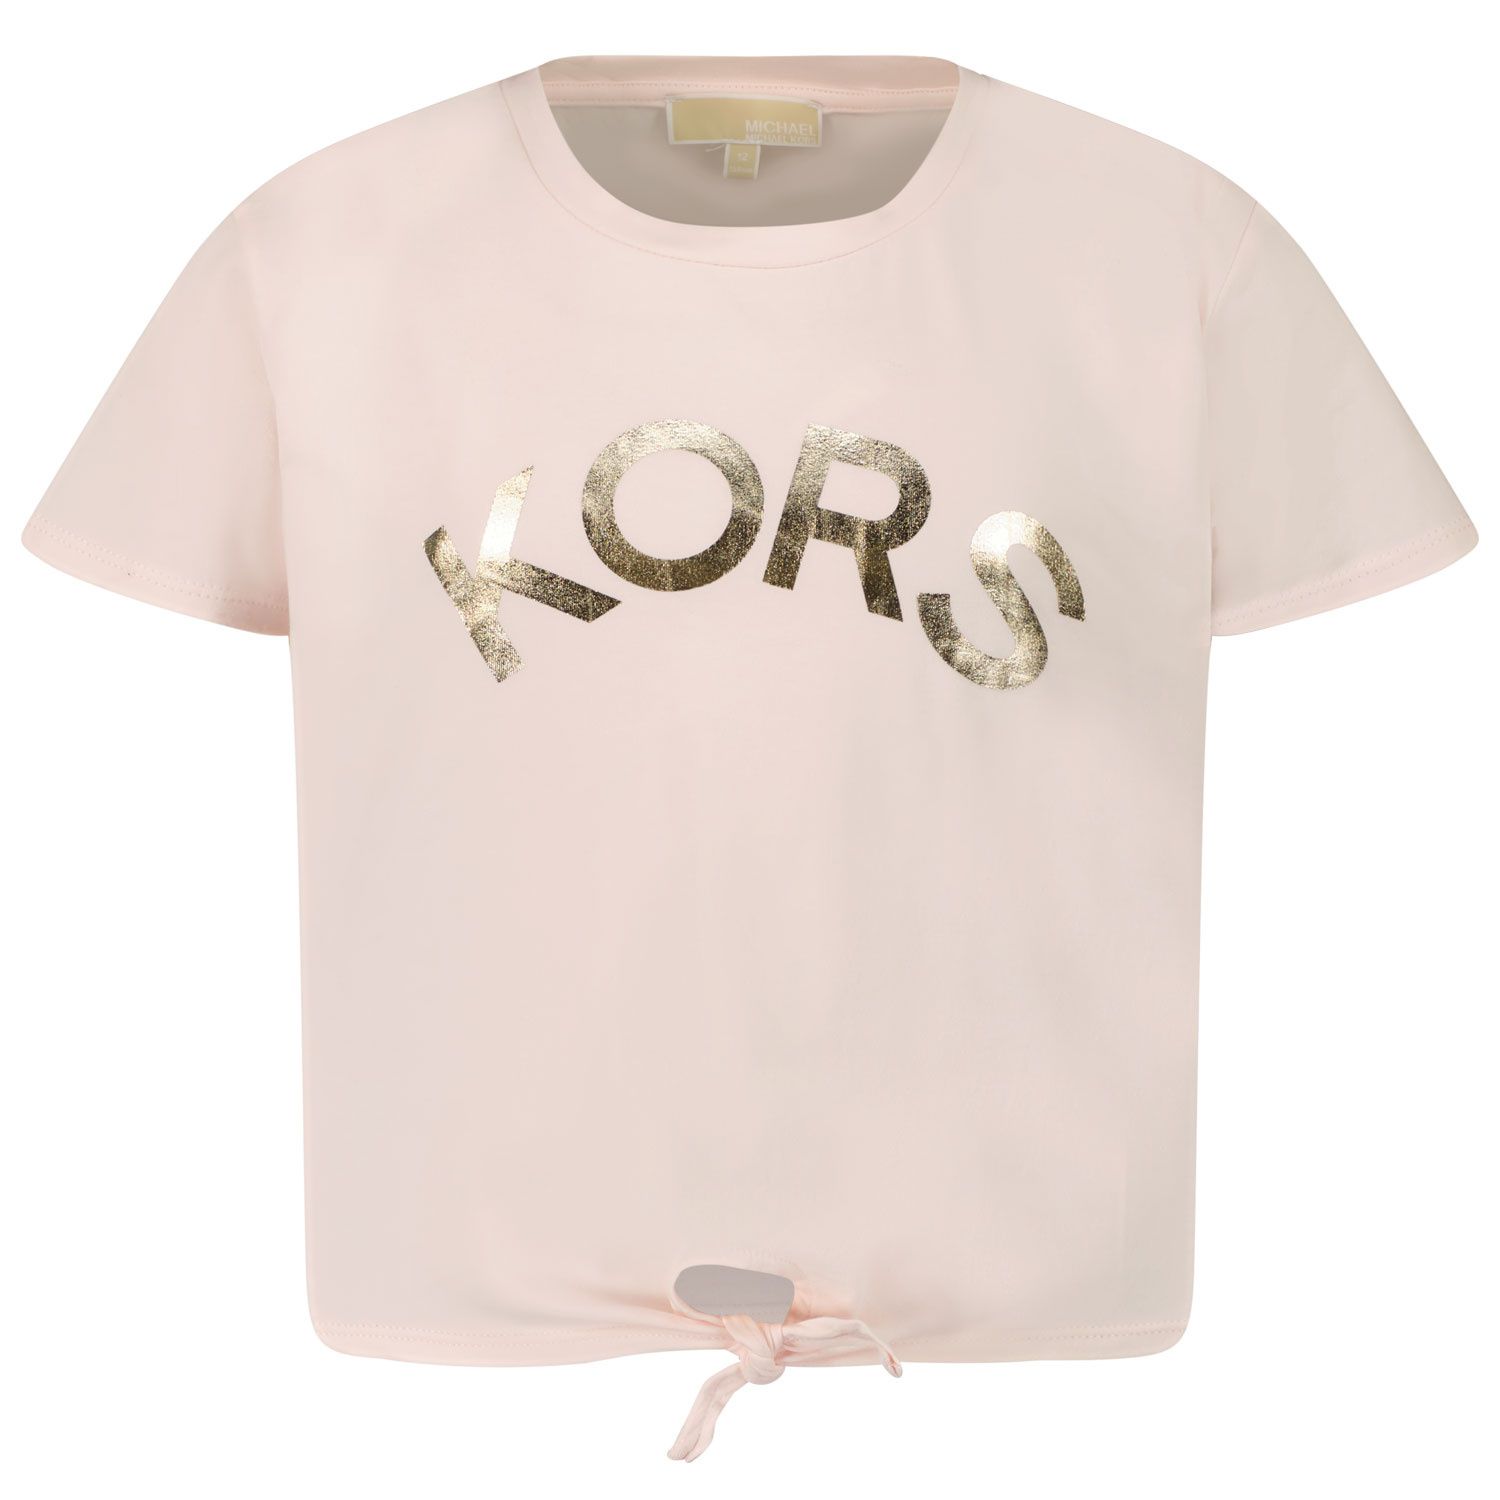 Afbeelding van Michael Kors R15114 kinder t-shirt licht roze